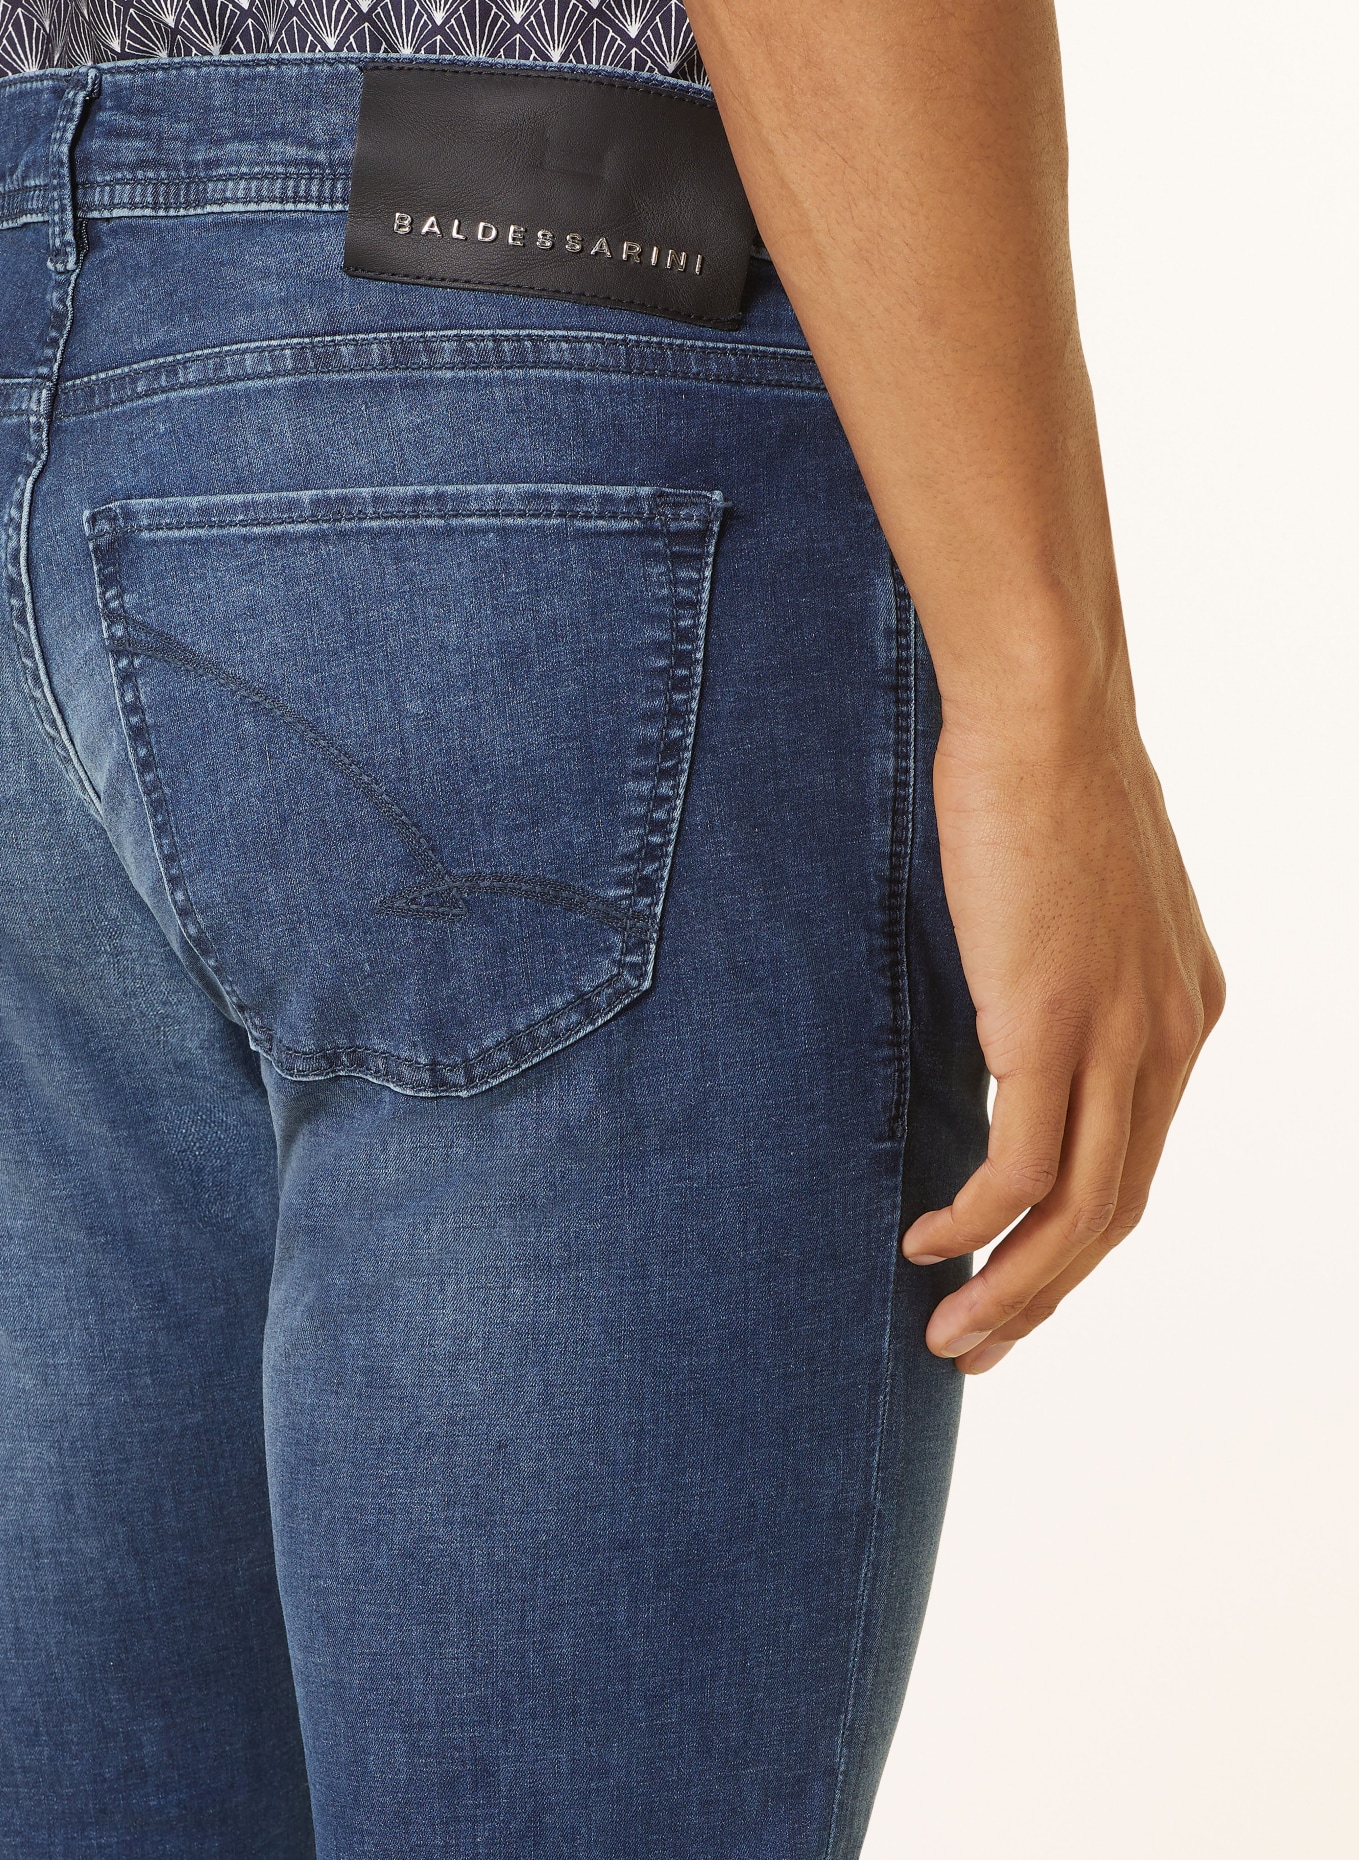 BALDESSARINI Jeans Regular Fit, Farbe: 6815 dark blue used whisker (Bild 6)